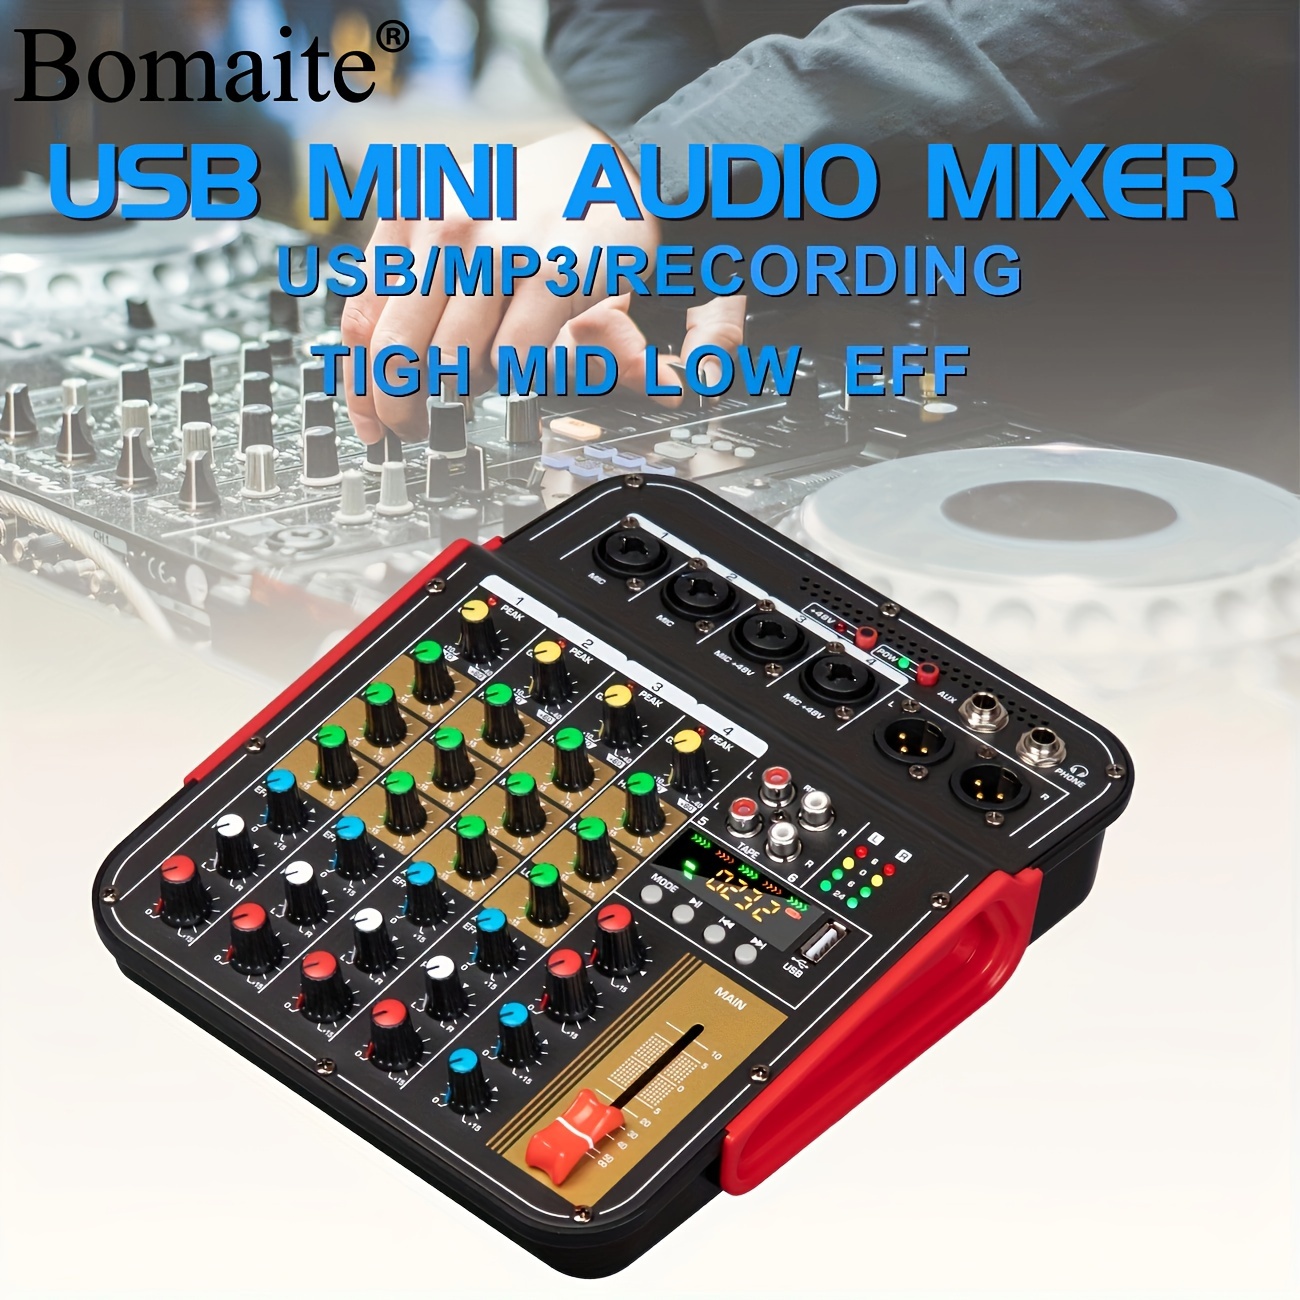 X-duomic MG04BT MG07BT Console De Mixage Audio Professionnelle Système De  Table De Mixage De Carte Son Interface Audio 4/7 Canaux Numérique USB MP3 En